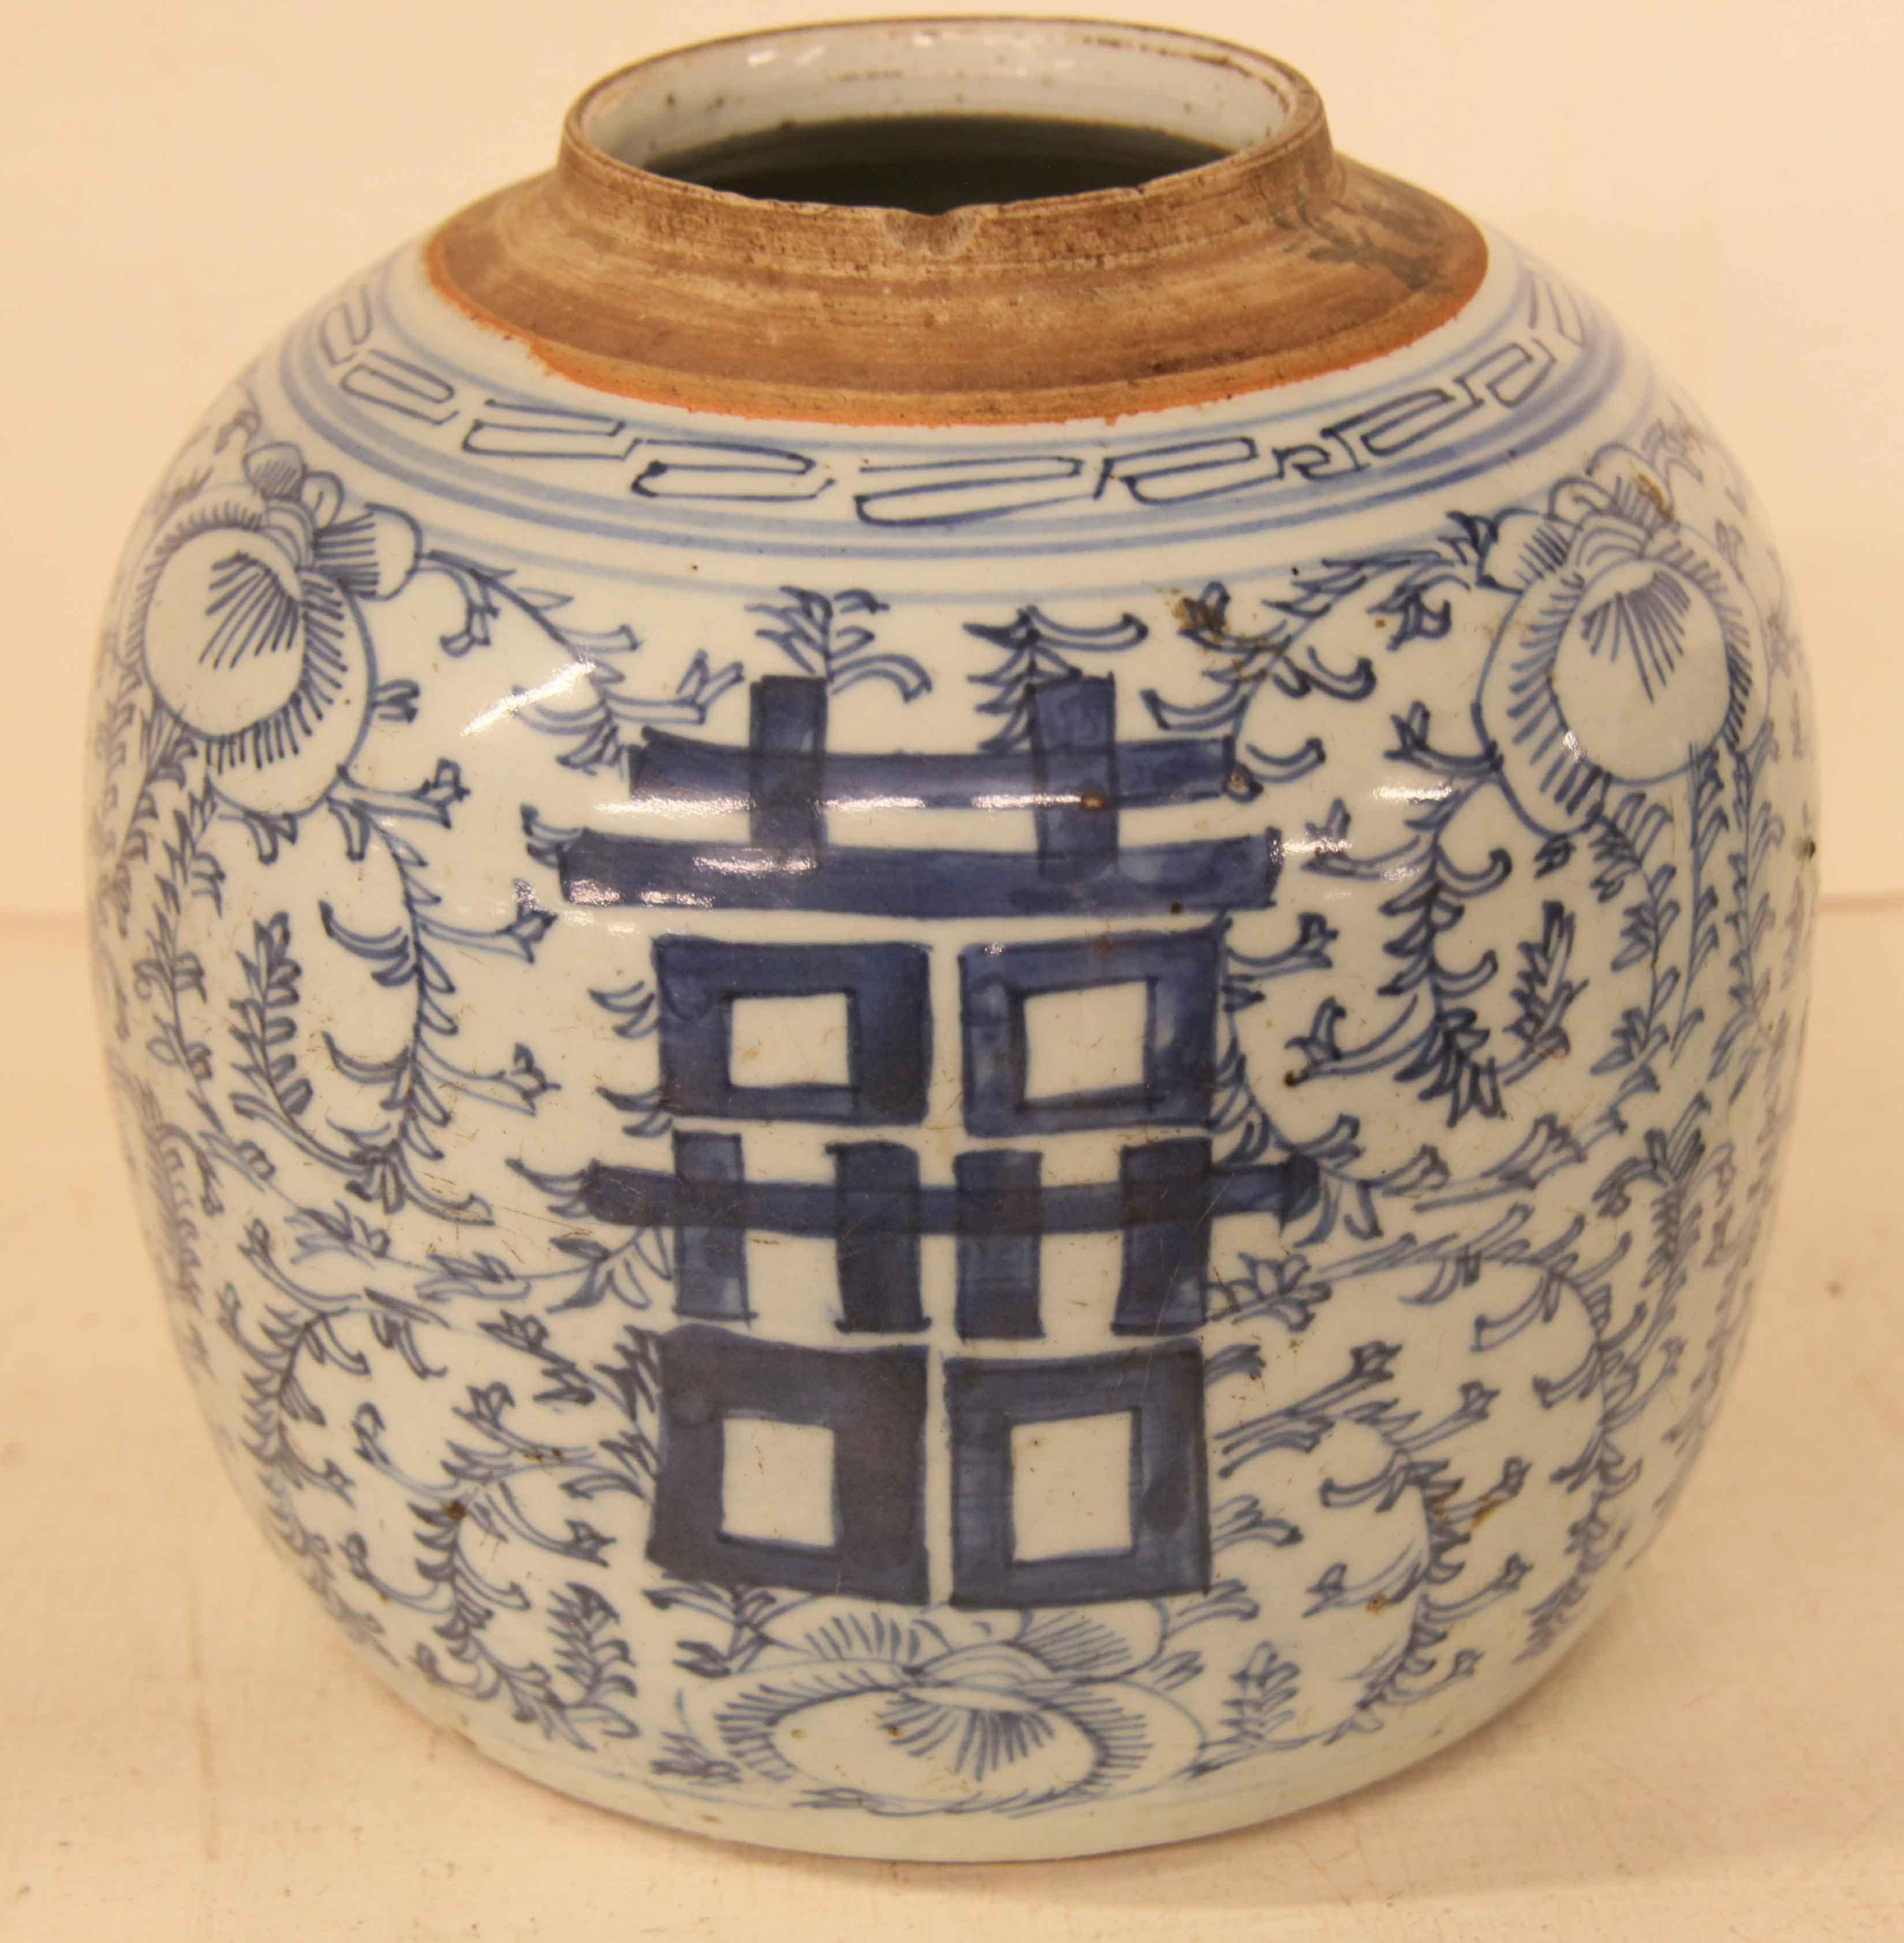 Deux anciens pots à gingembre chinois bleu et blanc à double bonheur,  Cette paire de pots est ornée du symbole du double bonheur, qui représente l'homme et la femme unis par les liens du mariage.   Les trois symboles de chaque pot sont entourés de